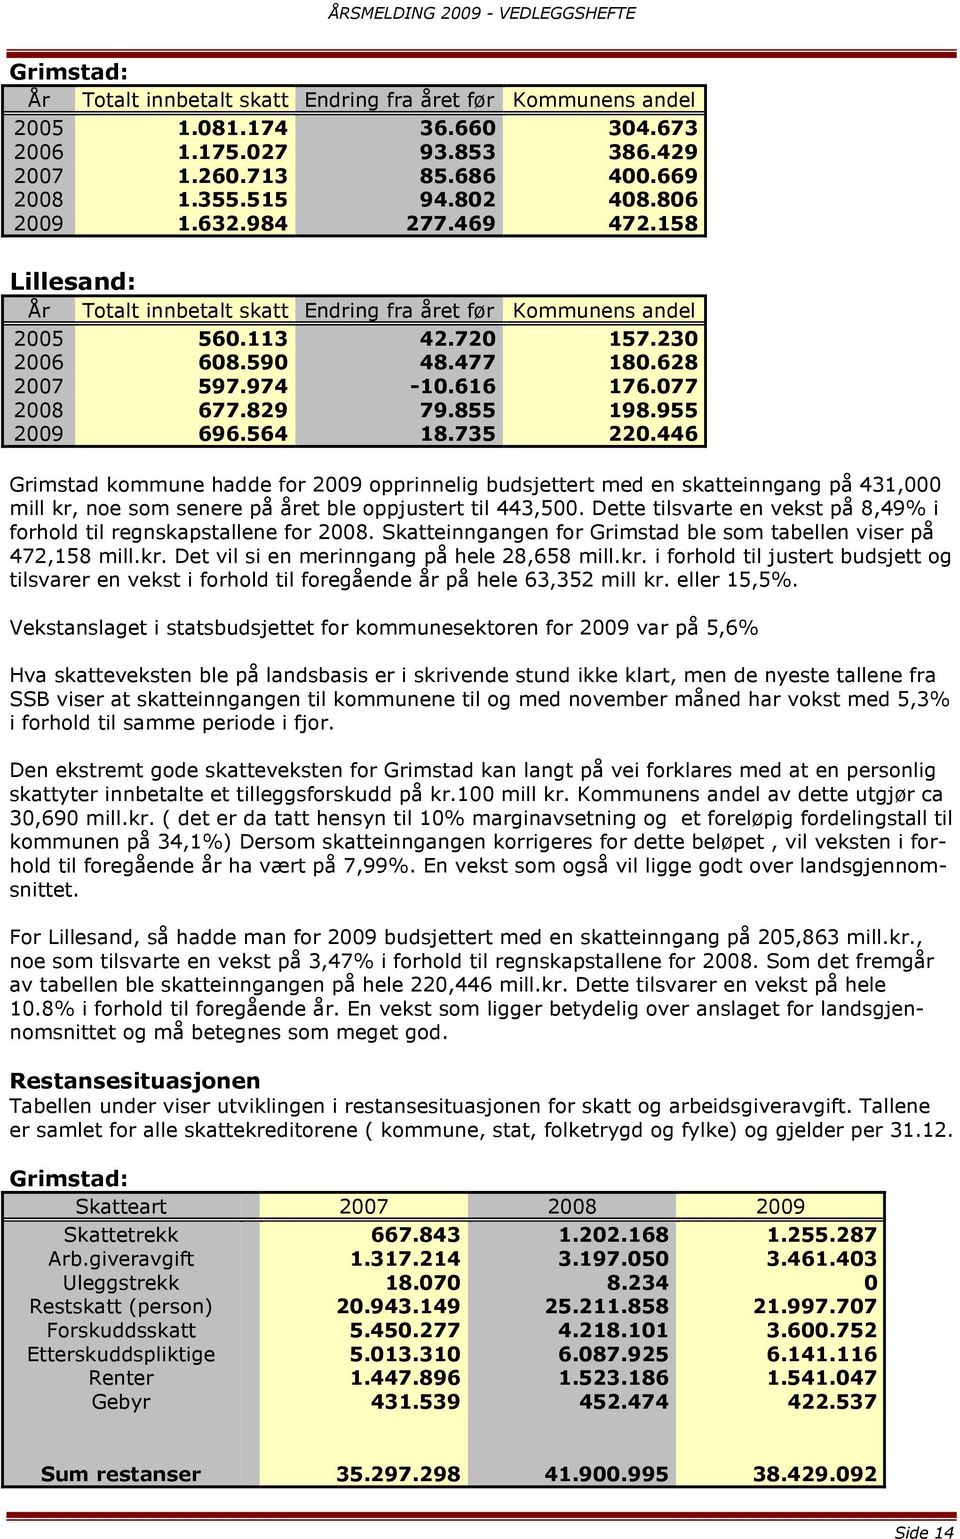 855 198.955 2009 696.564 18.735 220.446 Grimstad kommune hadde for 2009 opprinnelig budsjettert med en skatteinngang på 431,000 mill kr, noe som senere på året ble oppjustert til 443,500.